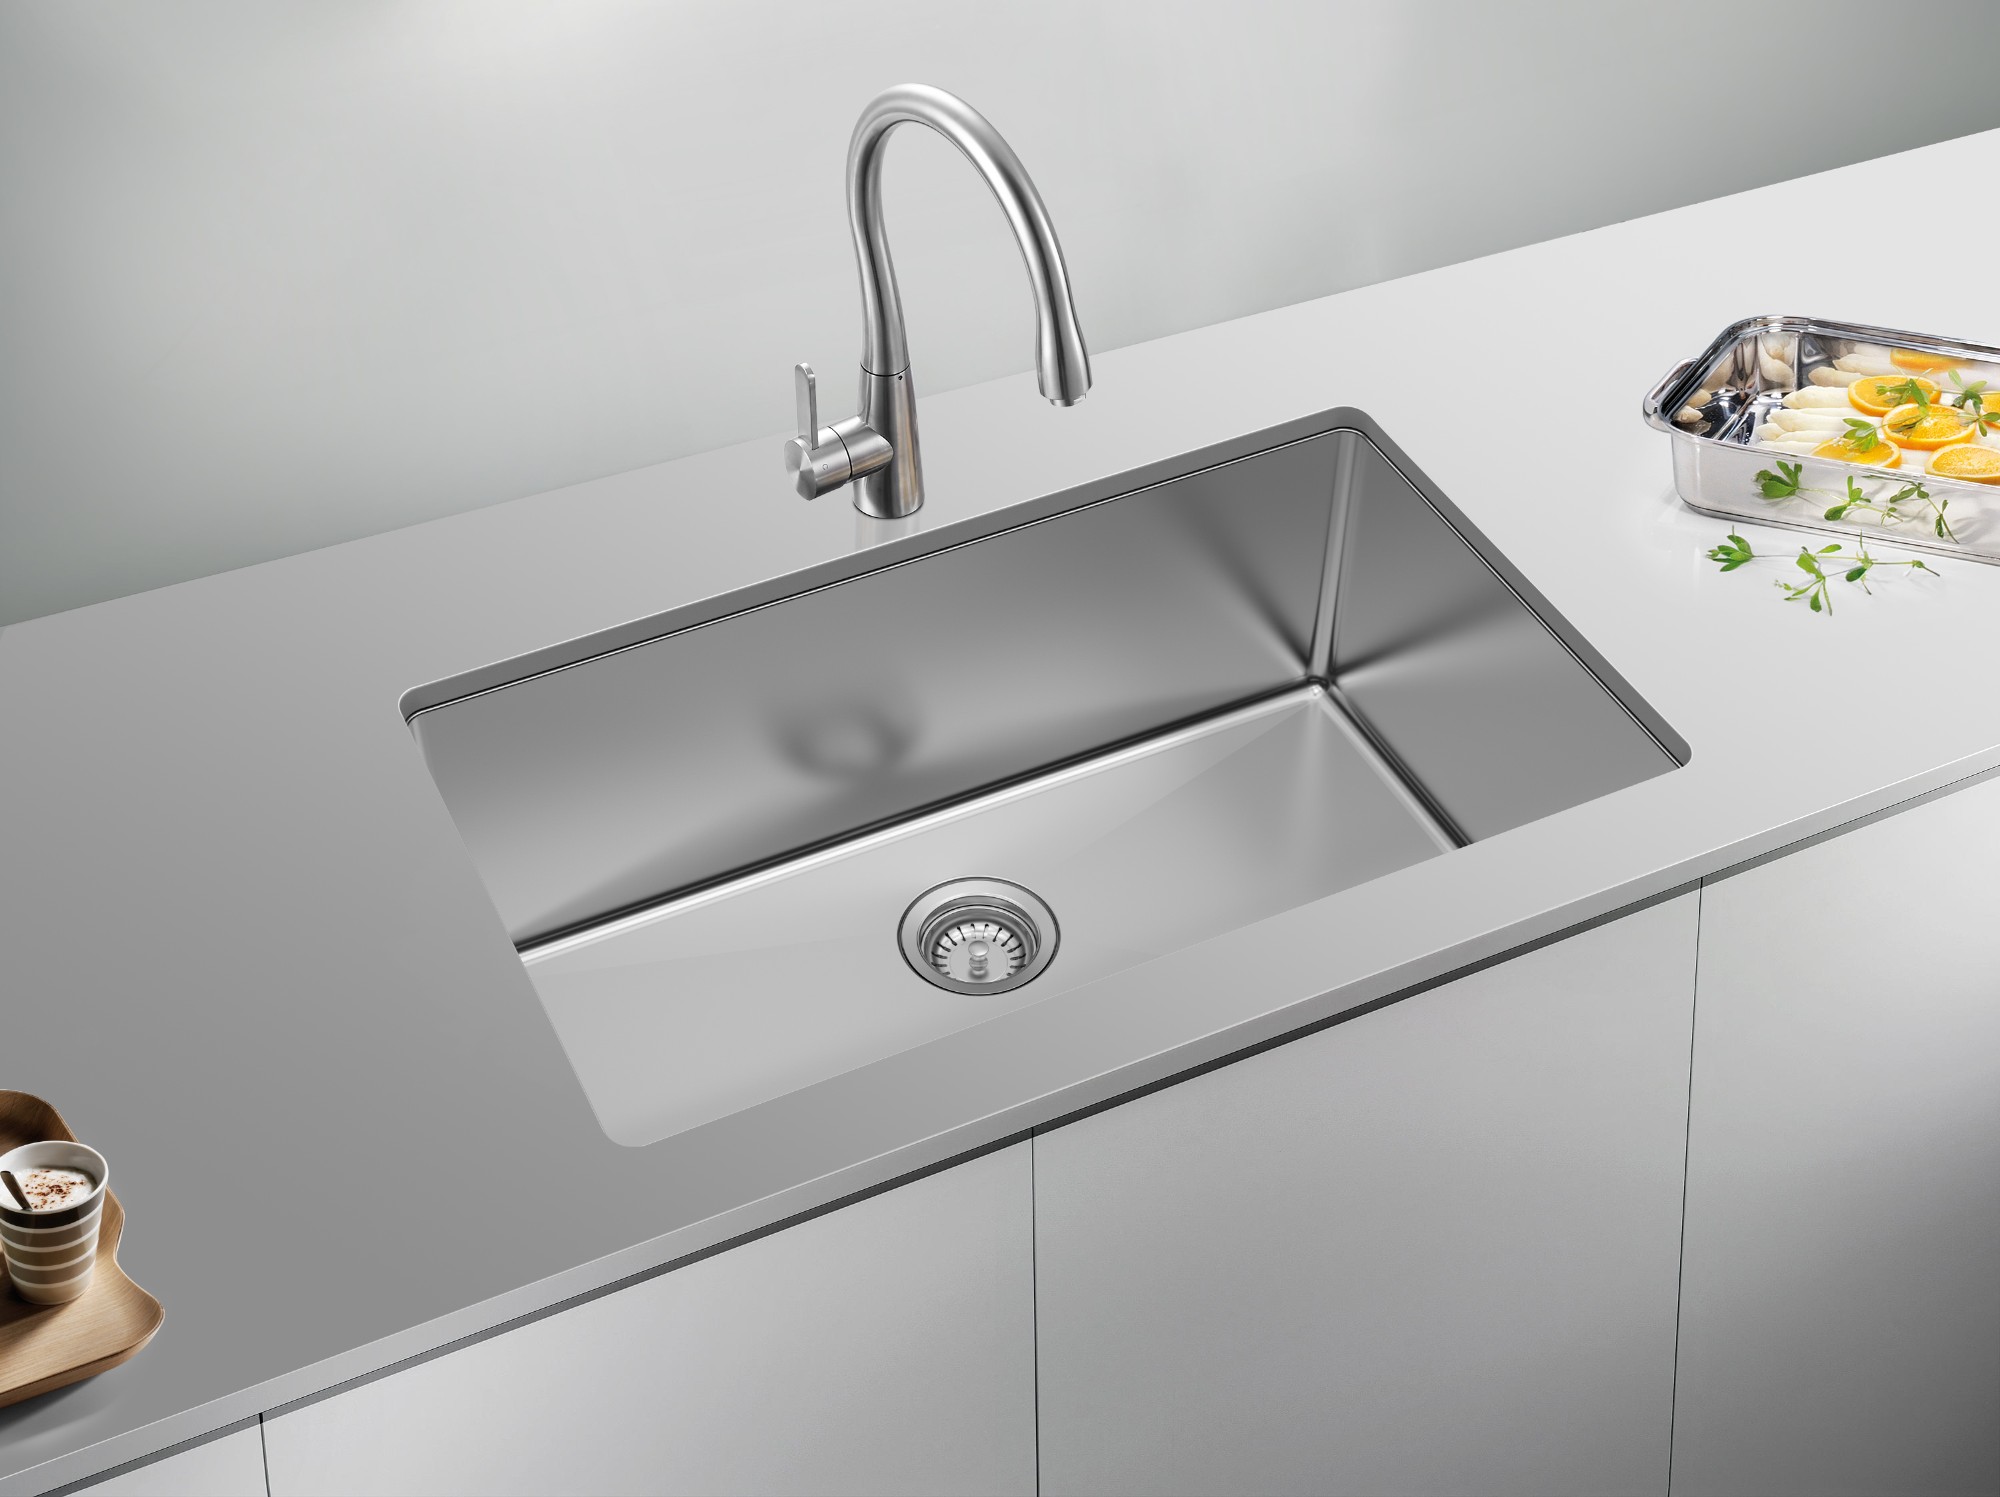 30 inch undermount kitchen sink white